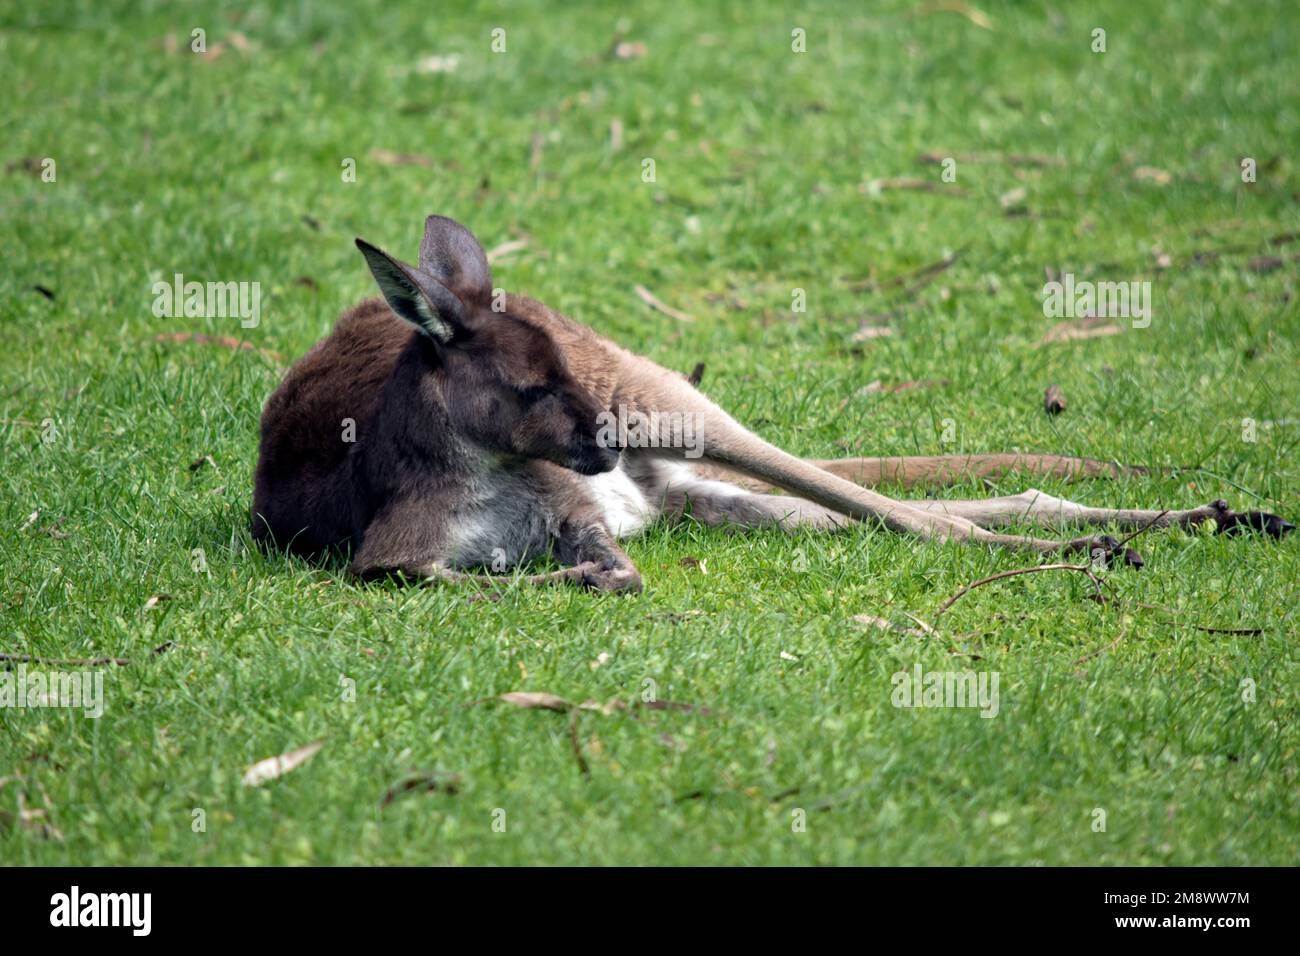 le kangourou gris occidental repose sur l'herbe Banque D'Images